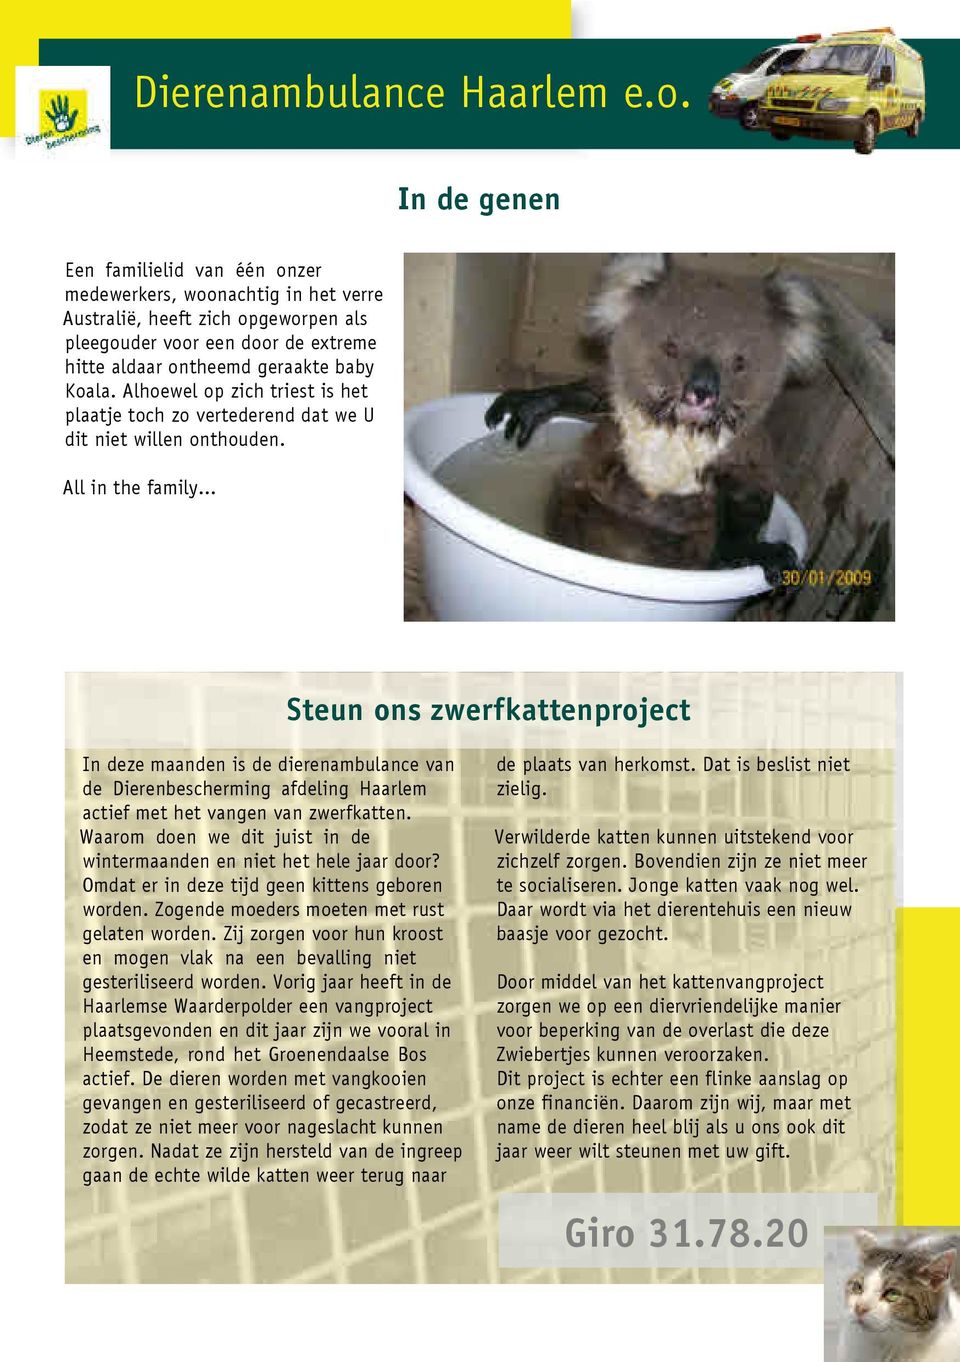 .. Steun ons zwerfkattenproject In deze maanden is de dierenambulance van de Dierenbescherming afdeling Haarlem actief met het vangen van zwerfkatten.